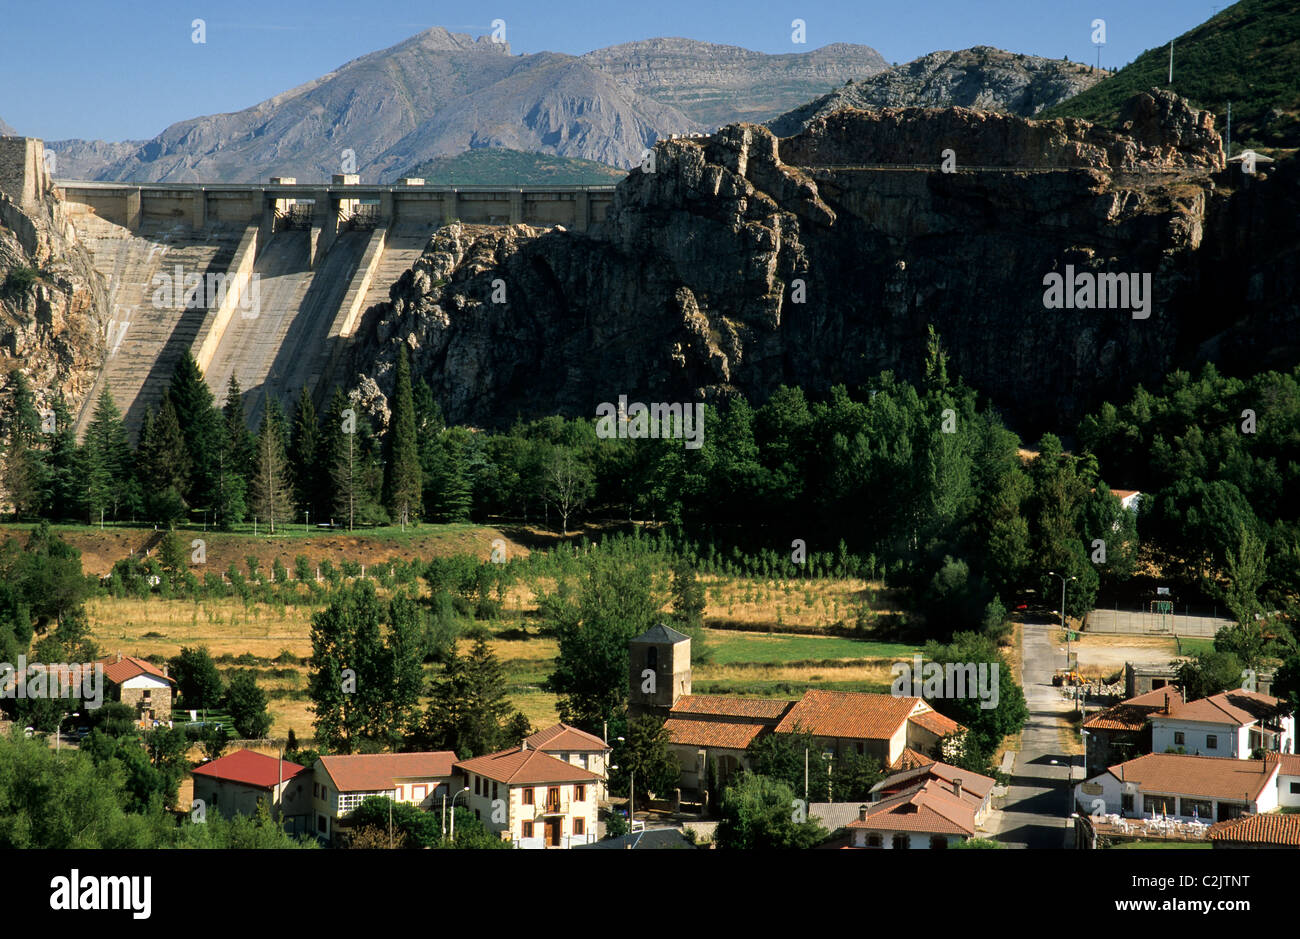 Dam and village of Los Barrios de Luna, Espacio Natural de San Emiliano, León, Spain Stock Photo